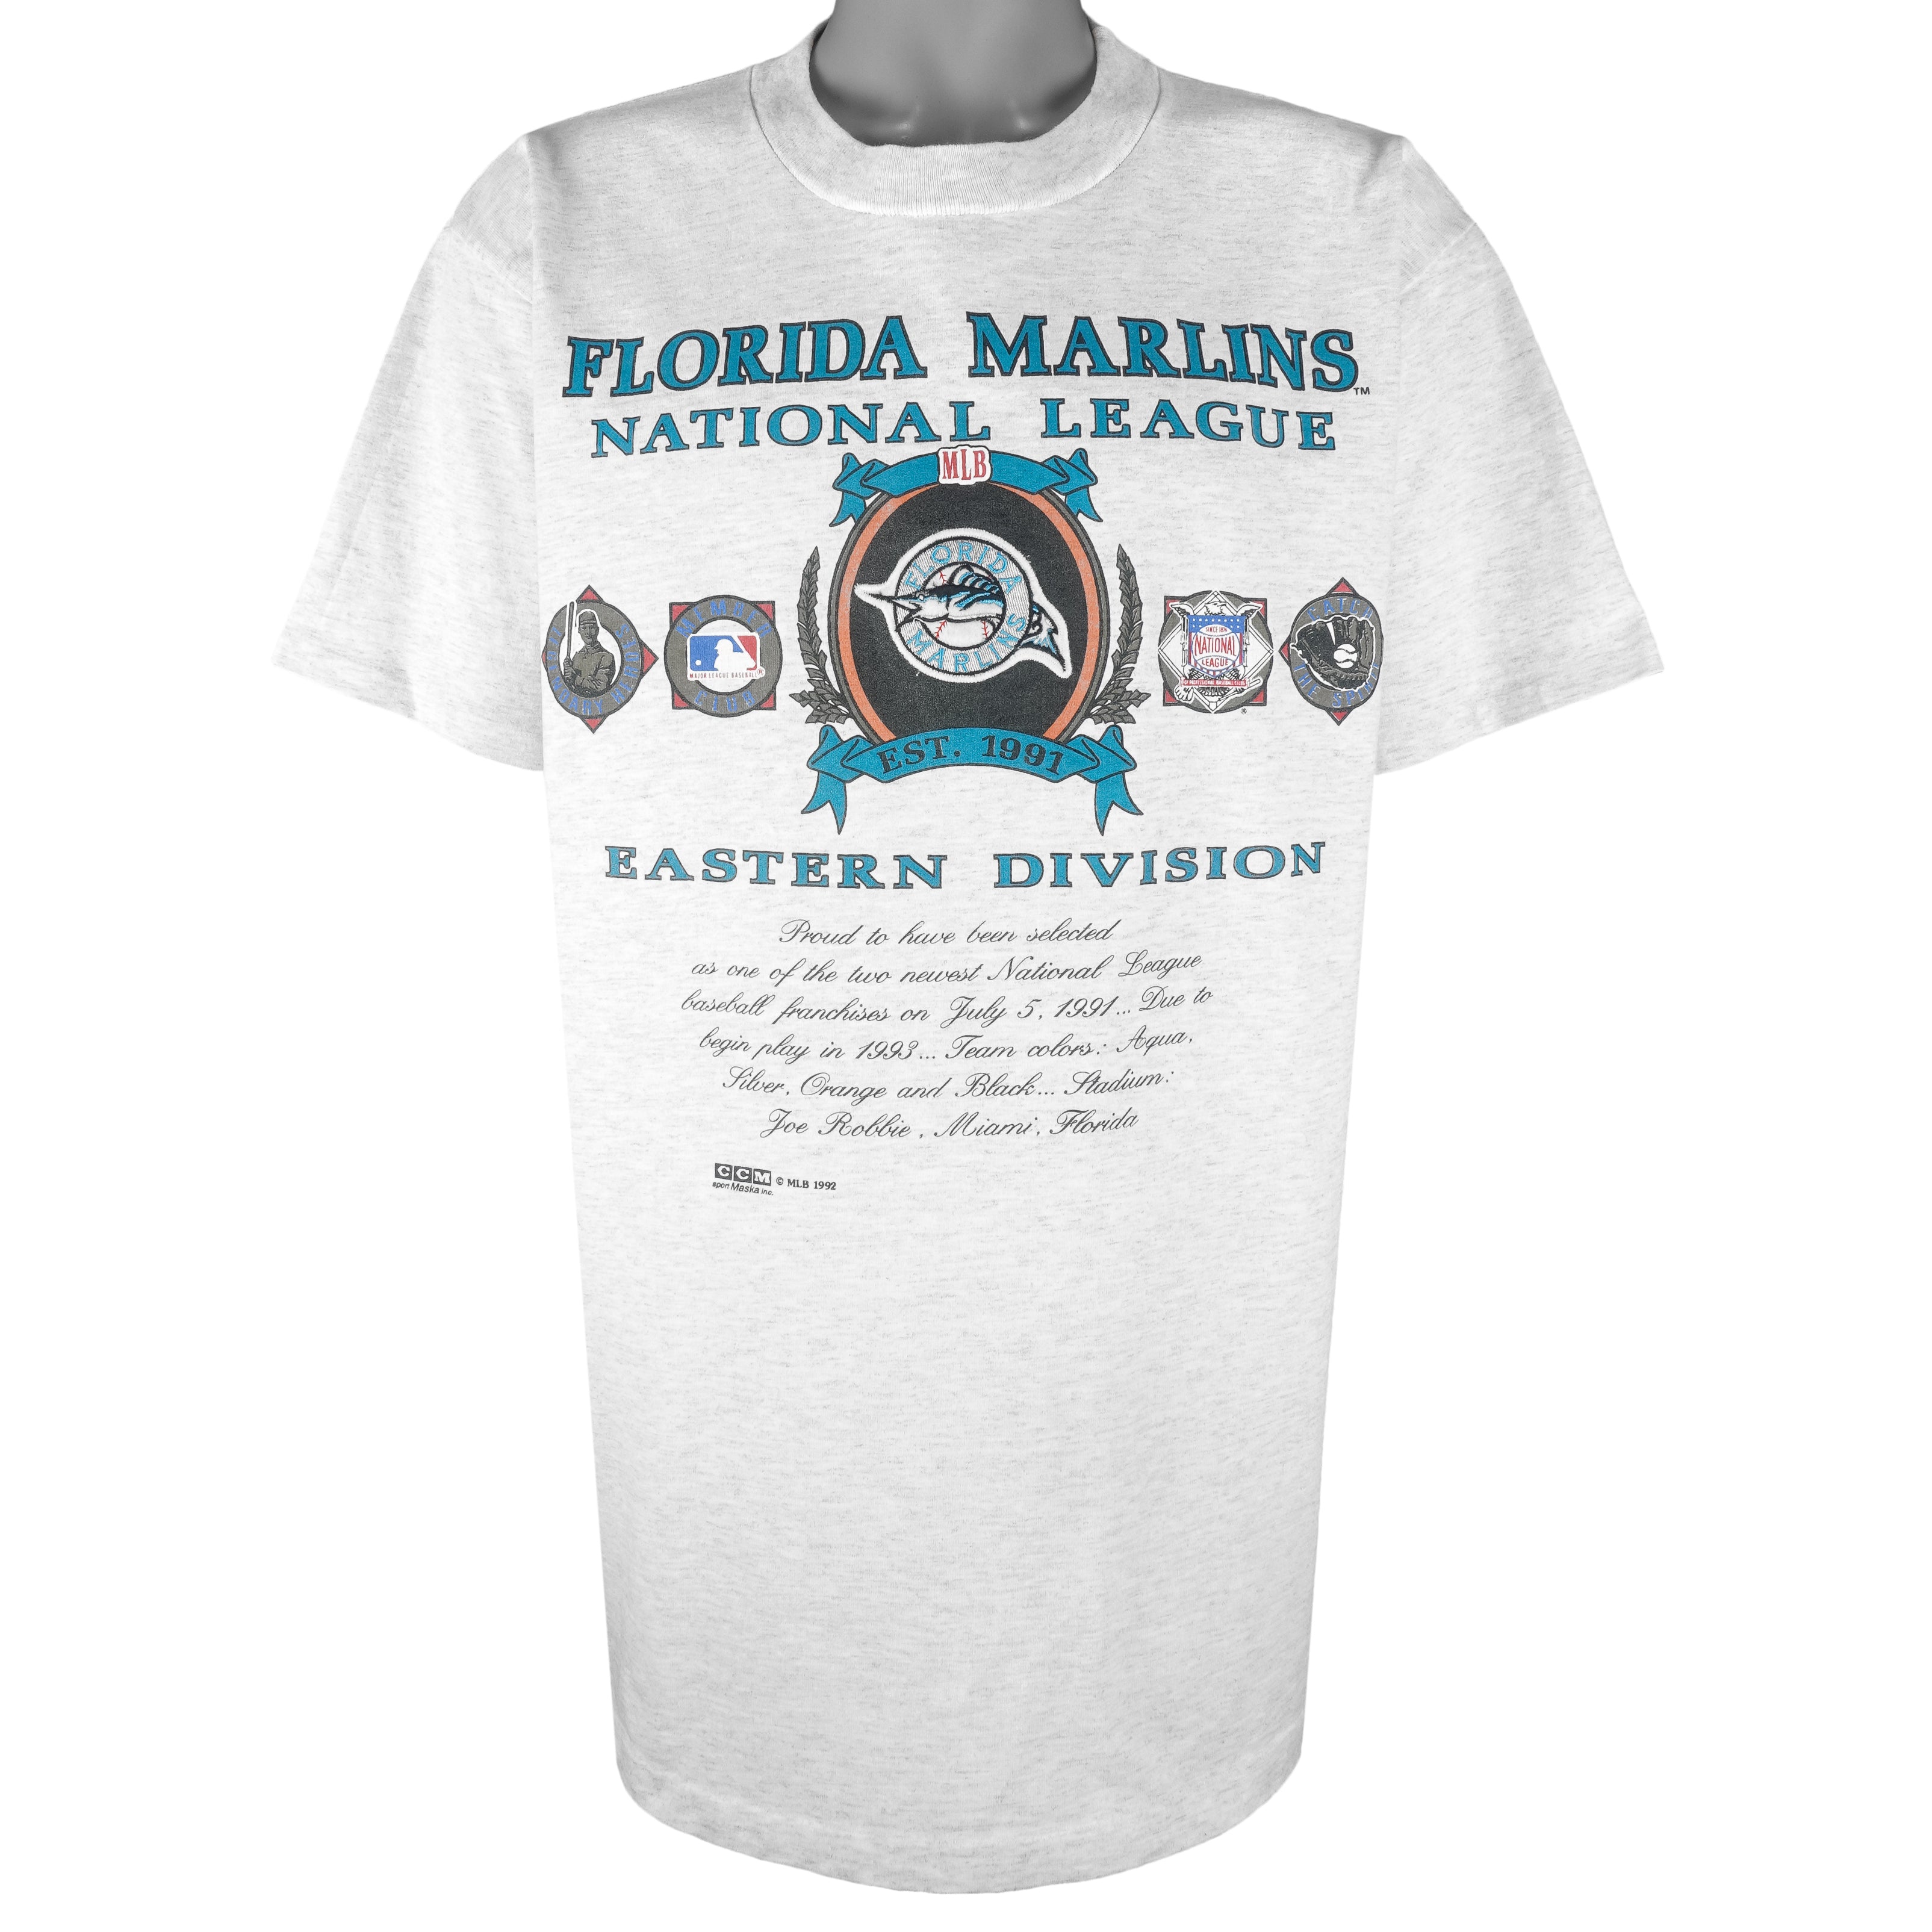 Black Florida Marlins MLB Jerseys for sale